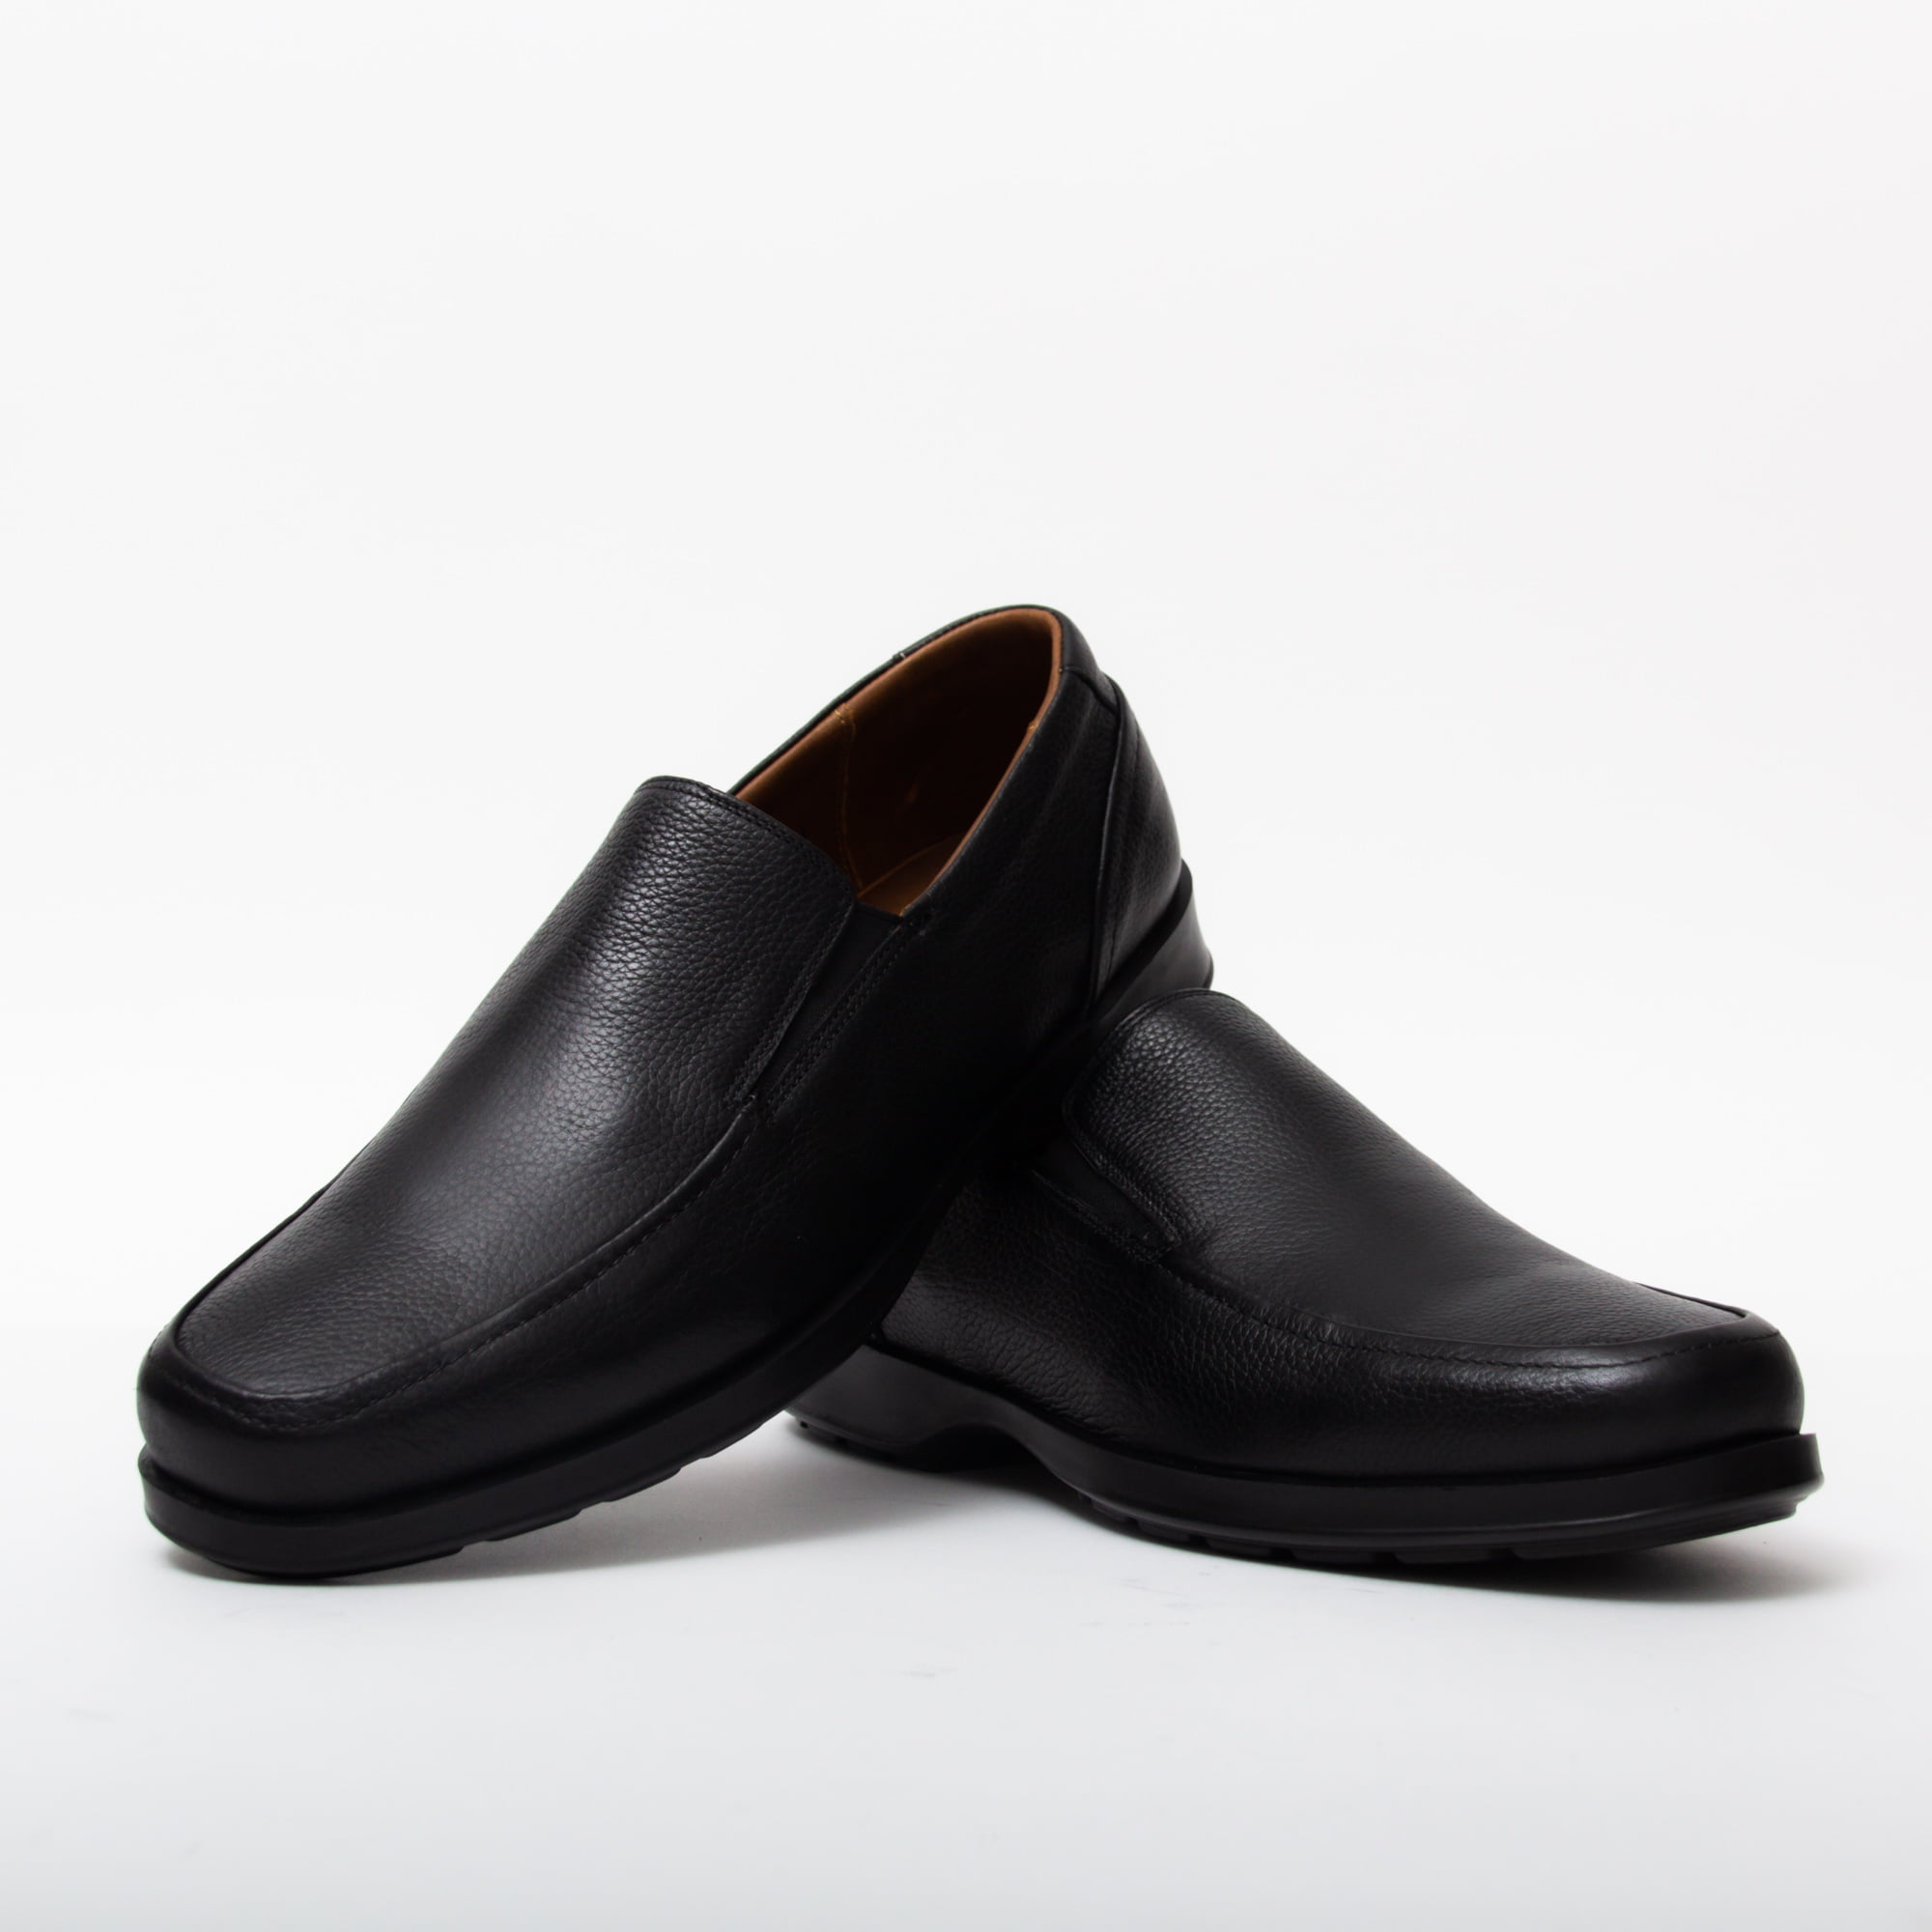 Chaussures Confortables pour Homme 100% Cuir Médical Noir